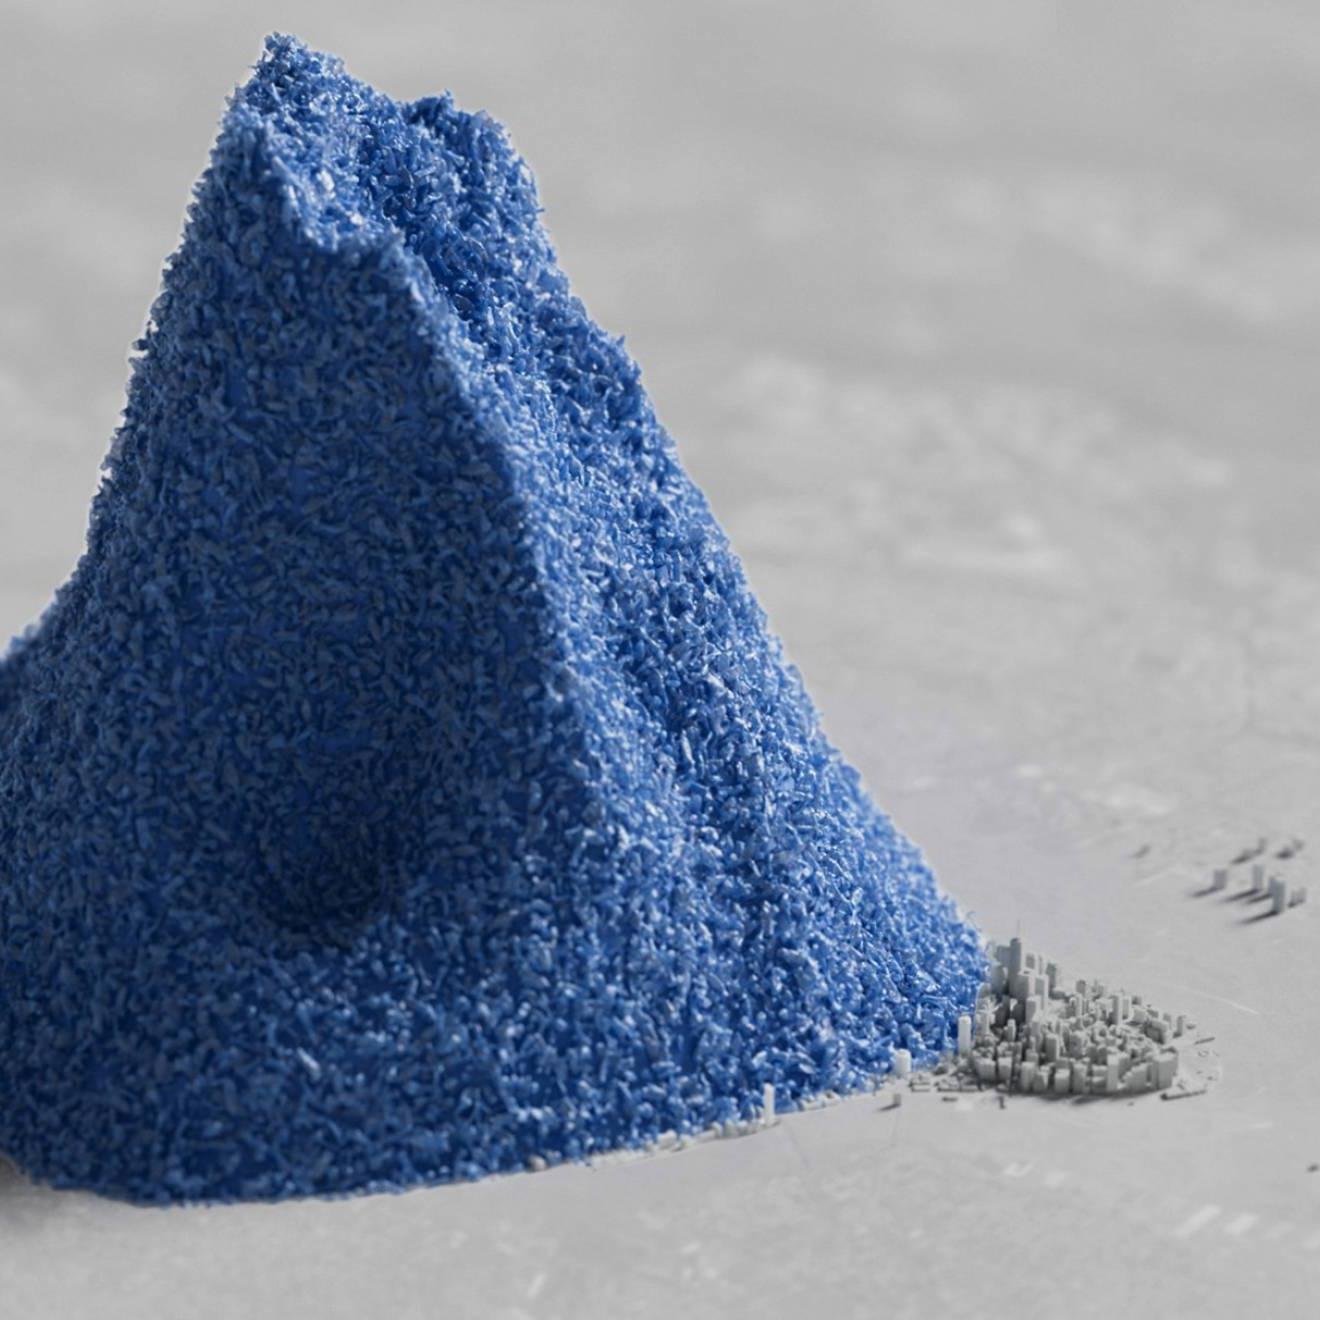 计算机生成的一堆蓝色塑料珠的图像使曼哈顿的无色3D渲染图相形见绌